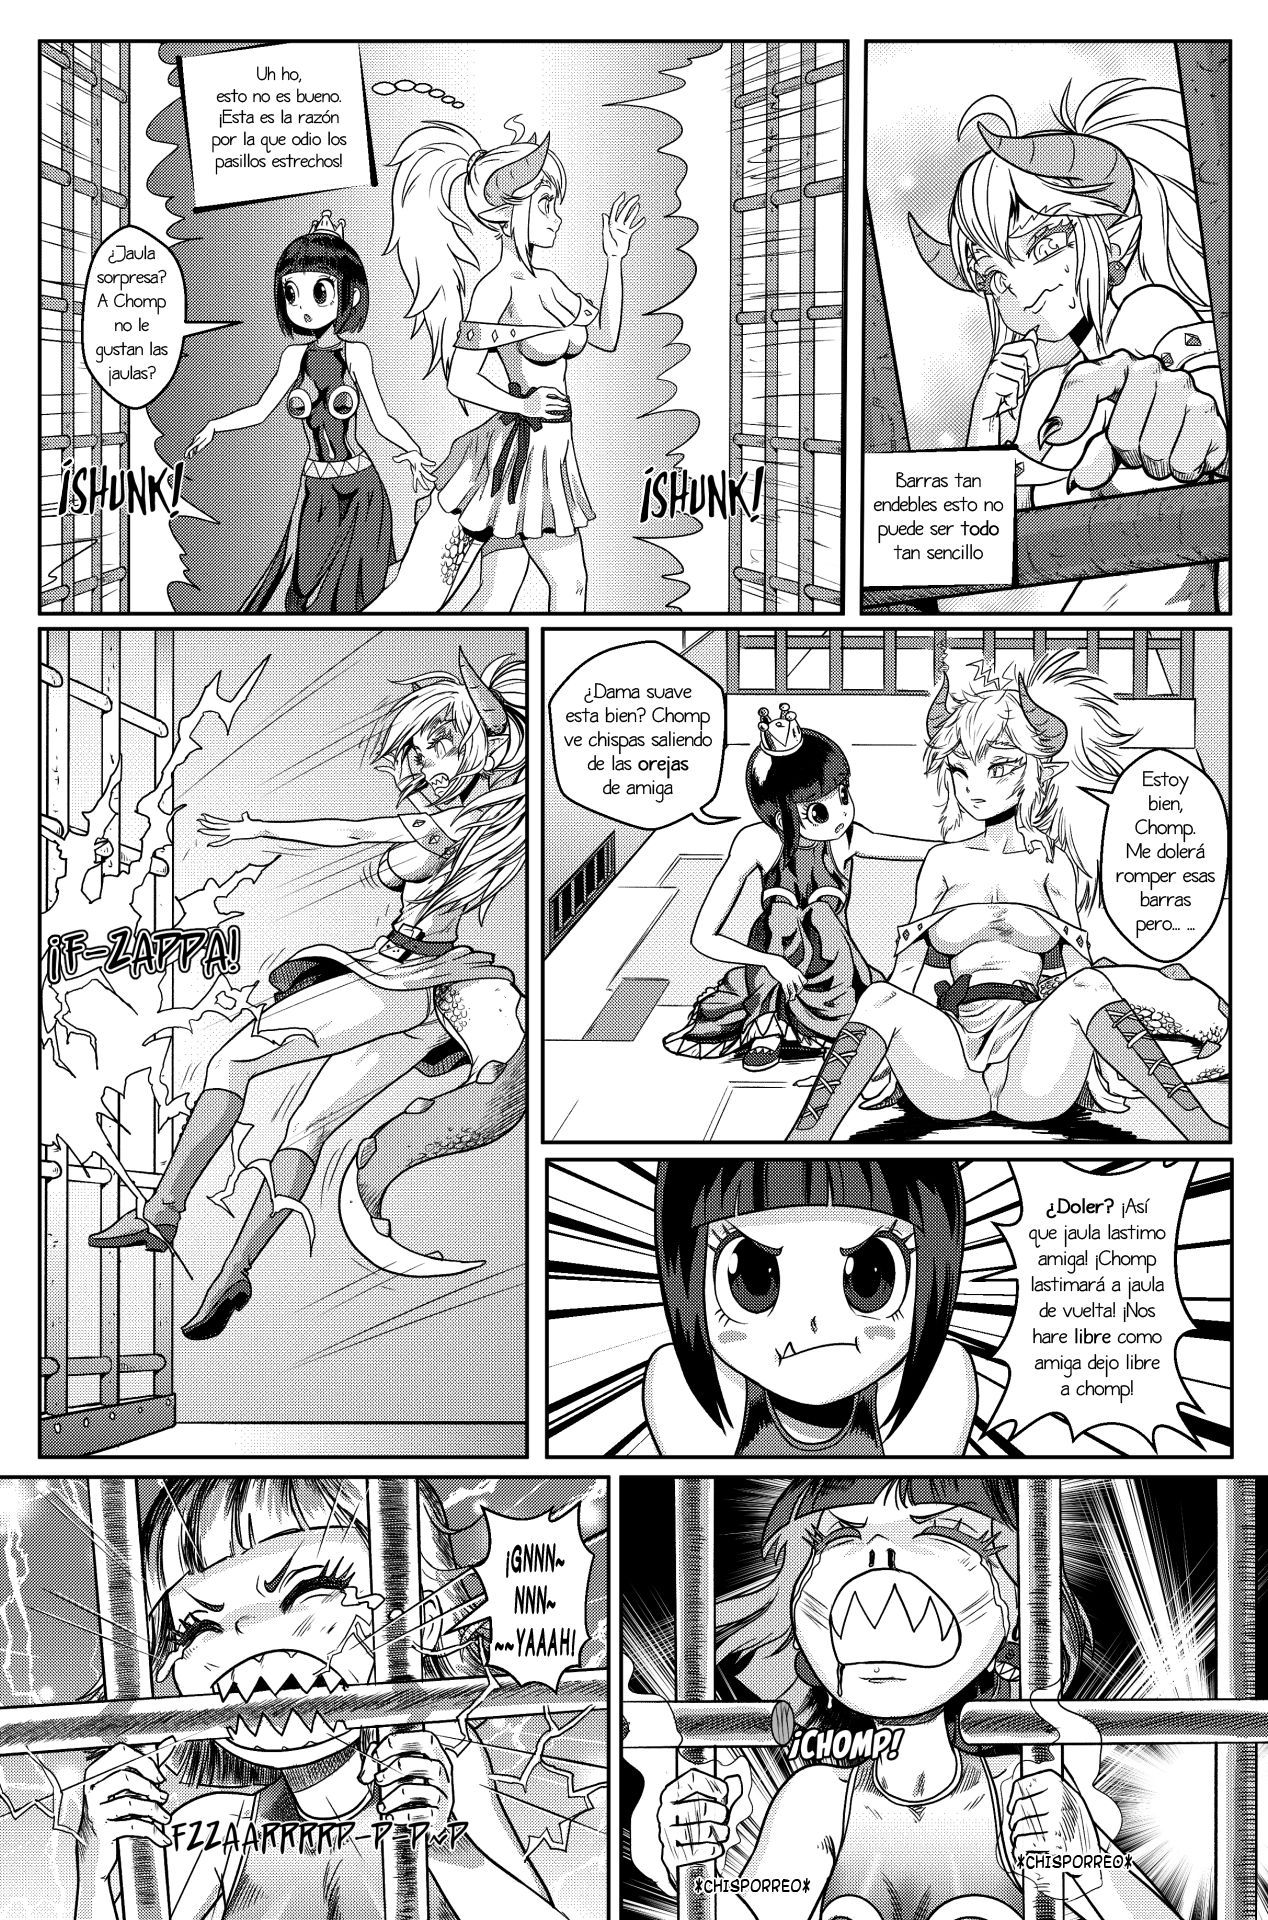 [Pencils] Bowsette Saga Vol.1 Y Vol.2 Completos - Vol.3 En Progreso (Mario Bros.) [Spanish] by Arkoniusx 41